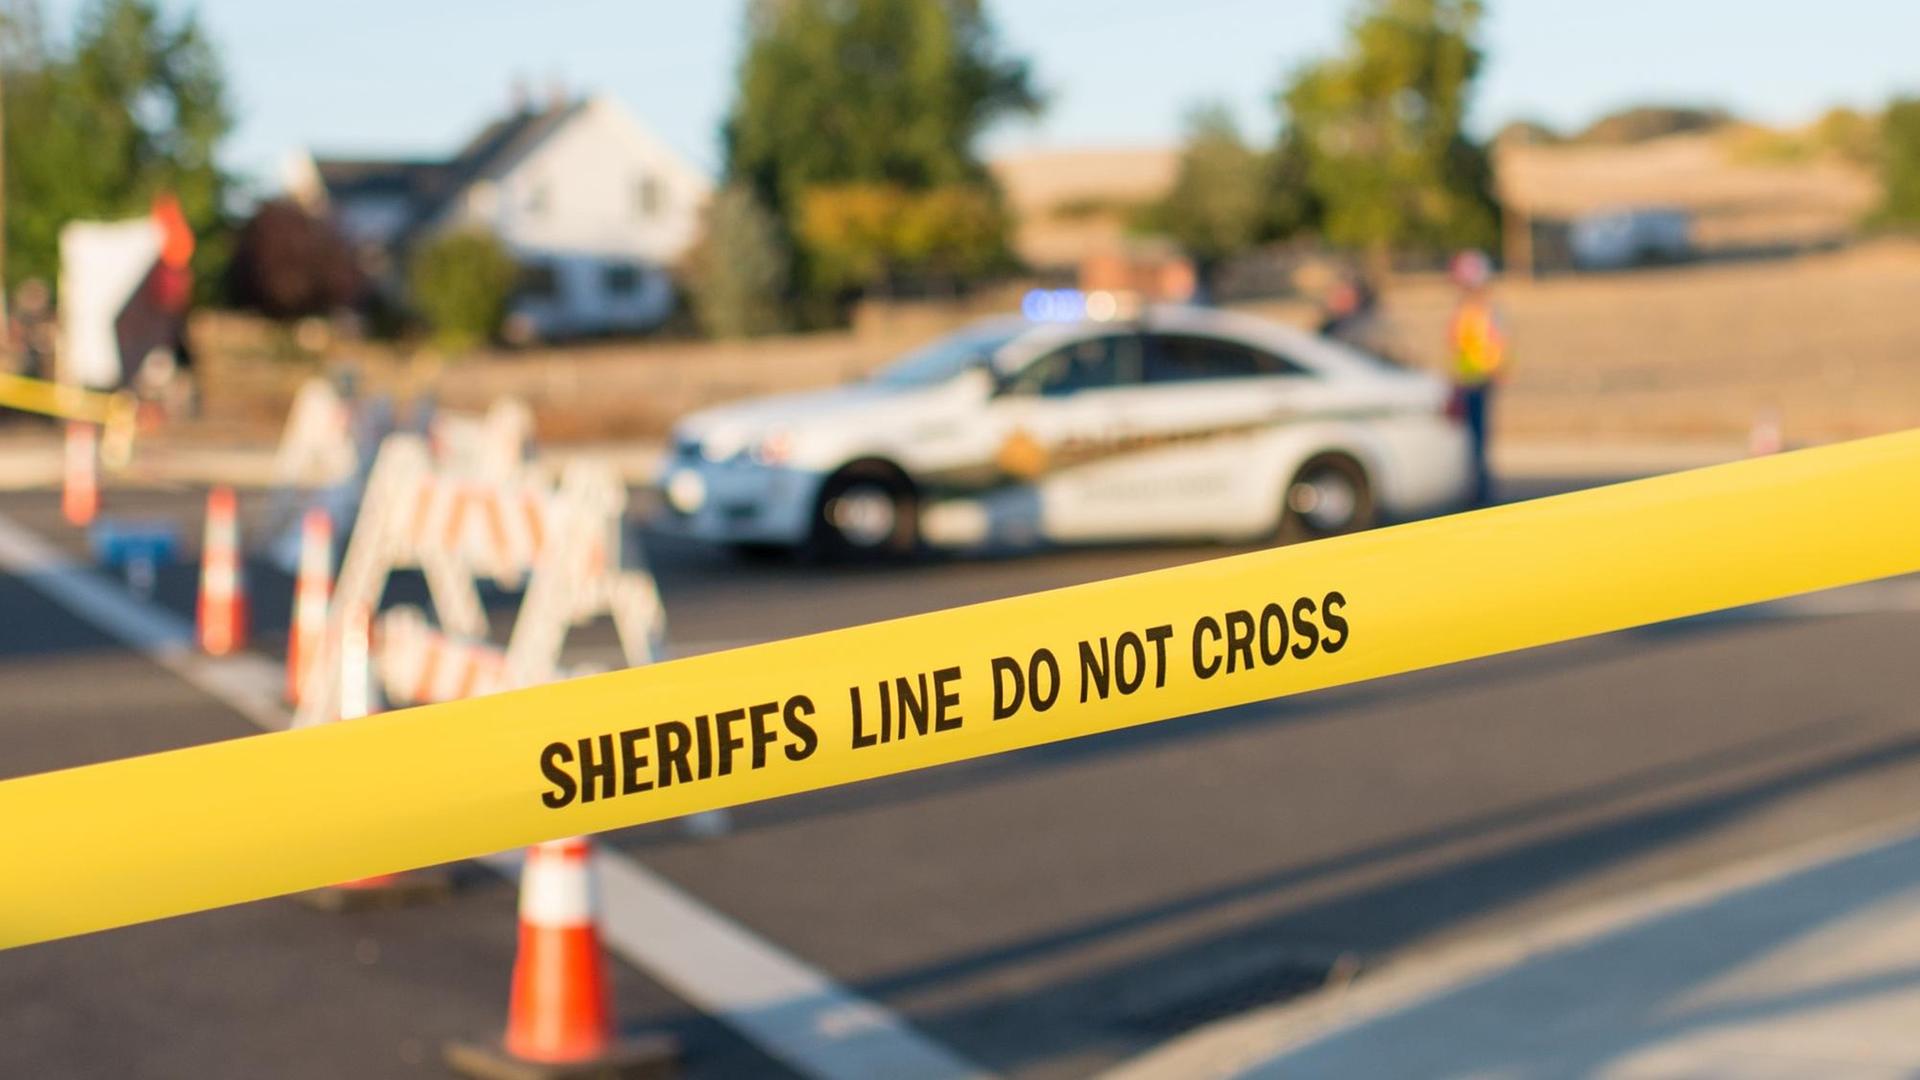 Hinter der Absperrung mit der Aufschrift "Sheriffs Line do not cross" ist ein Polizeiauto zu sehen.